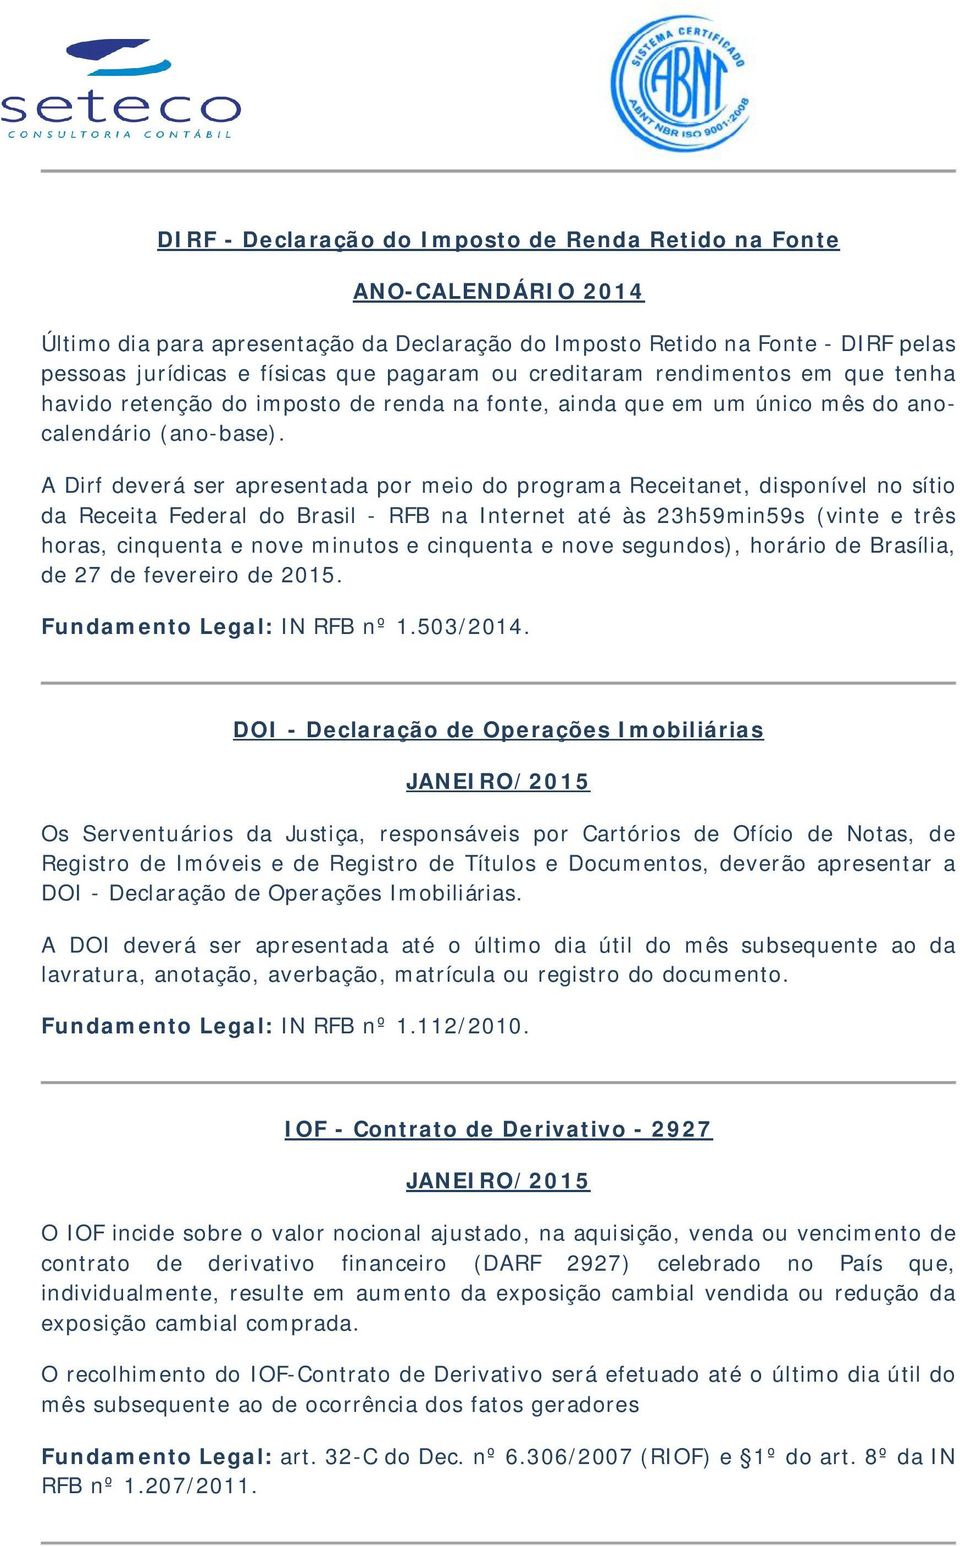 A Dirf deverá ser apresentada por meio do programa Receitanet, disponível no sítio da Receita Federal do Brasil - RFB na Internet até às 23h59min59s (vinte e três horas, cinquenta e nove minutos e